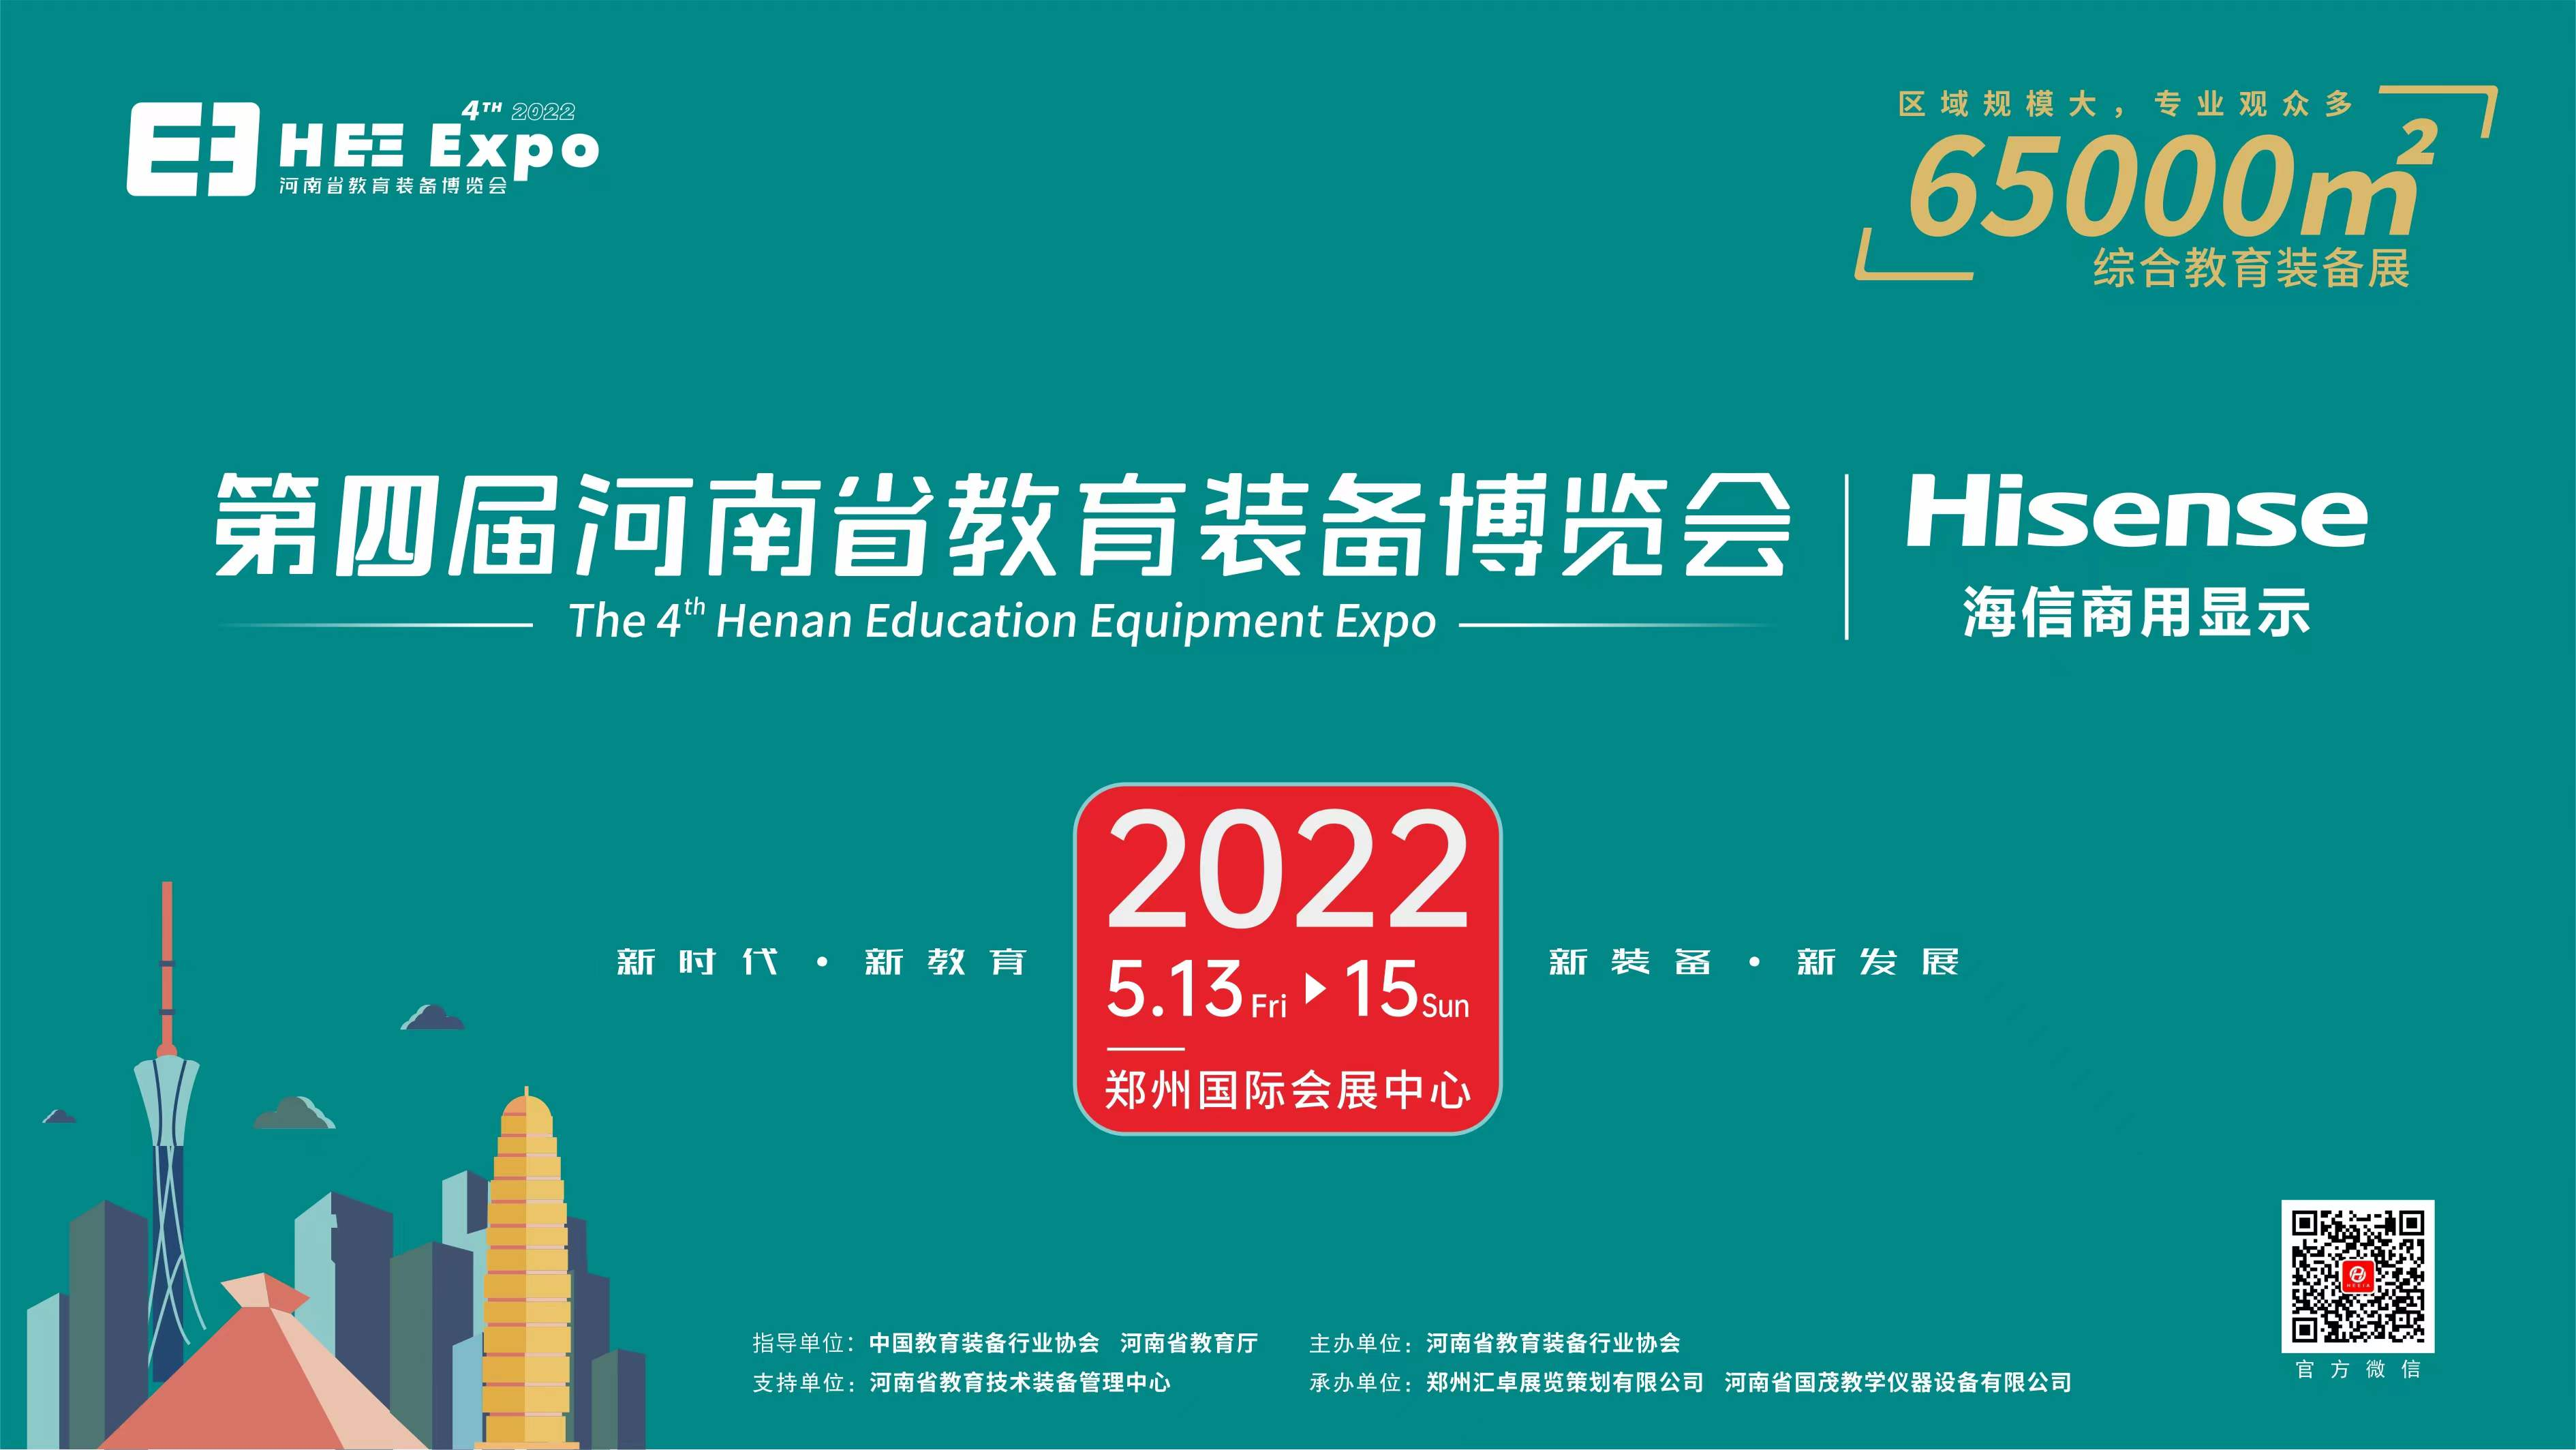 2022年如何抢占河南教育装备市场？河南省教育装备博览会助您一臂之力！